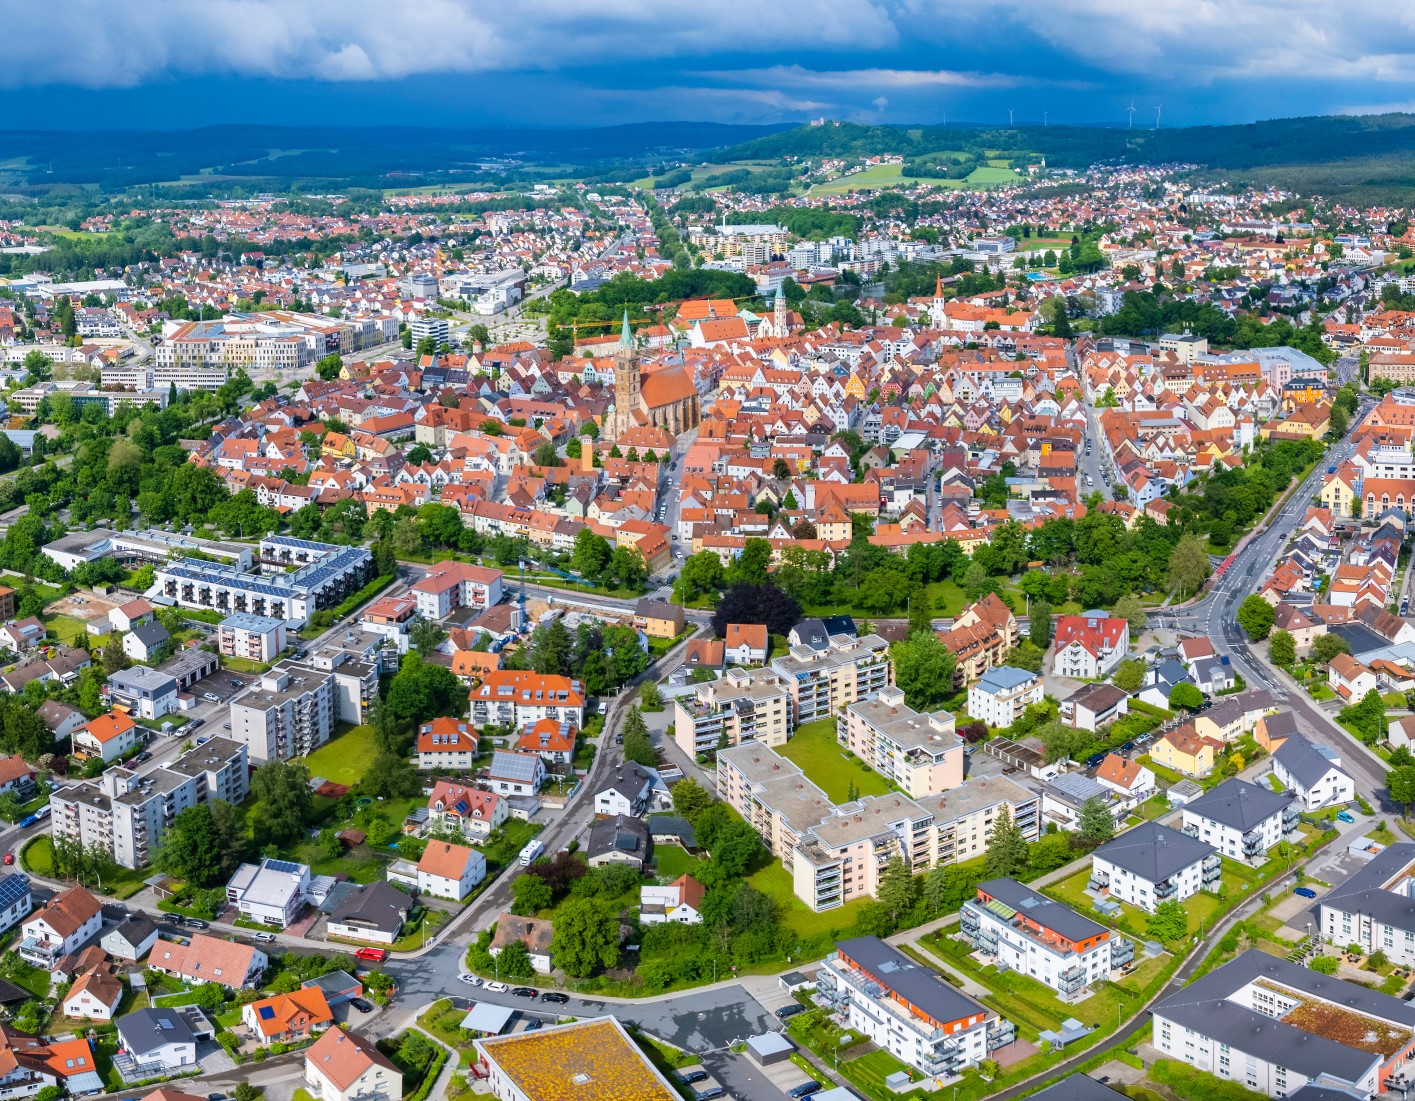 Neumarkt befindet sich in einer der vitalsten, wirtschaftlich stärksten und in unseren Augen auch schönsten Regionen Deutschlands: der europäischen Metropolregion Nürnberg.